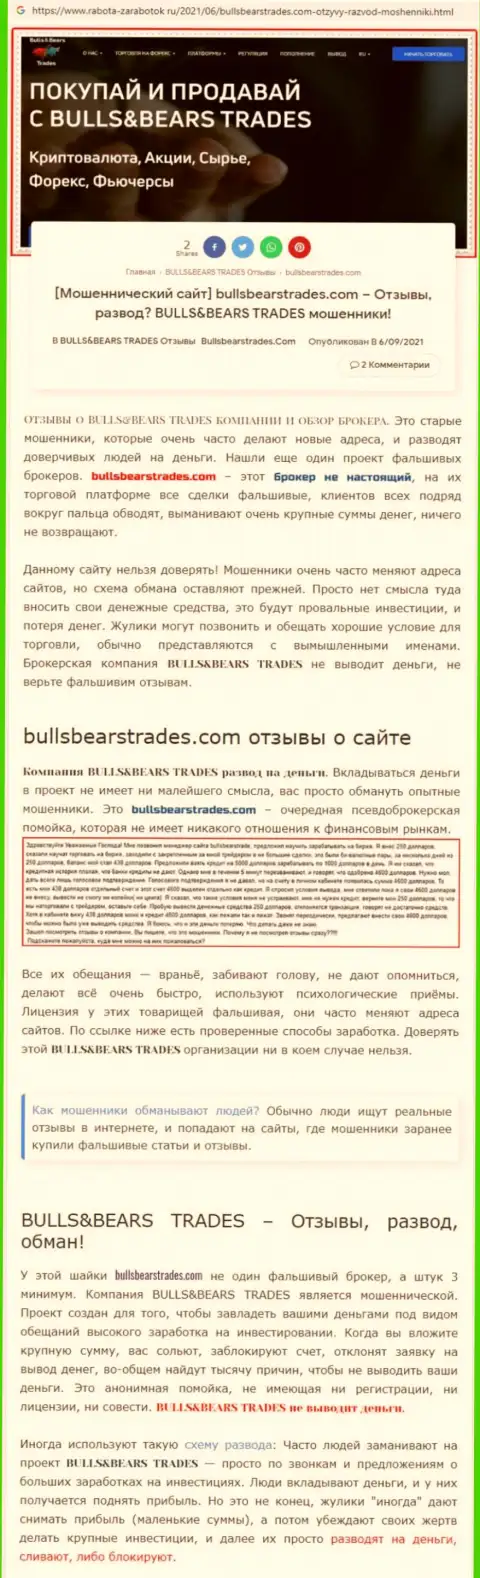 Обзор незаконно действующей конторы BullsBears Trades о том, как обувает доверчивых клиентов